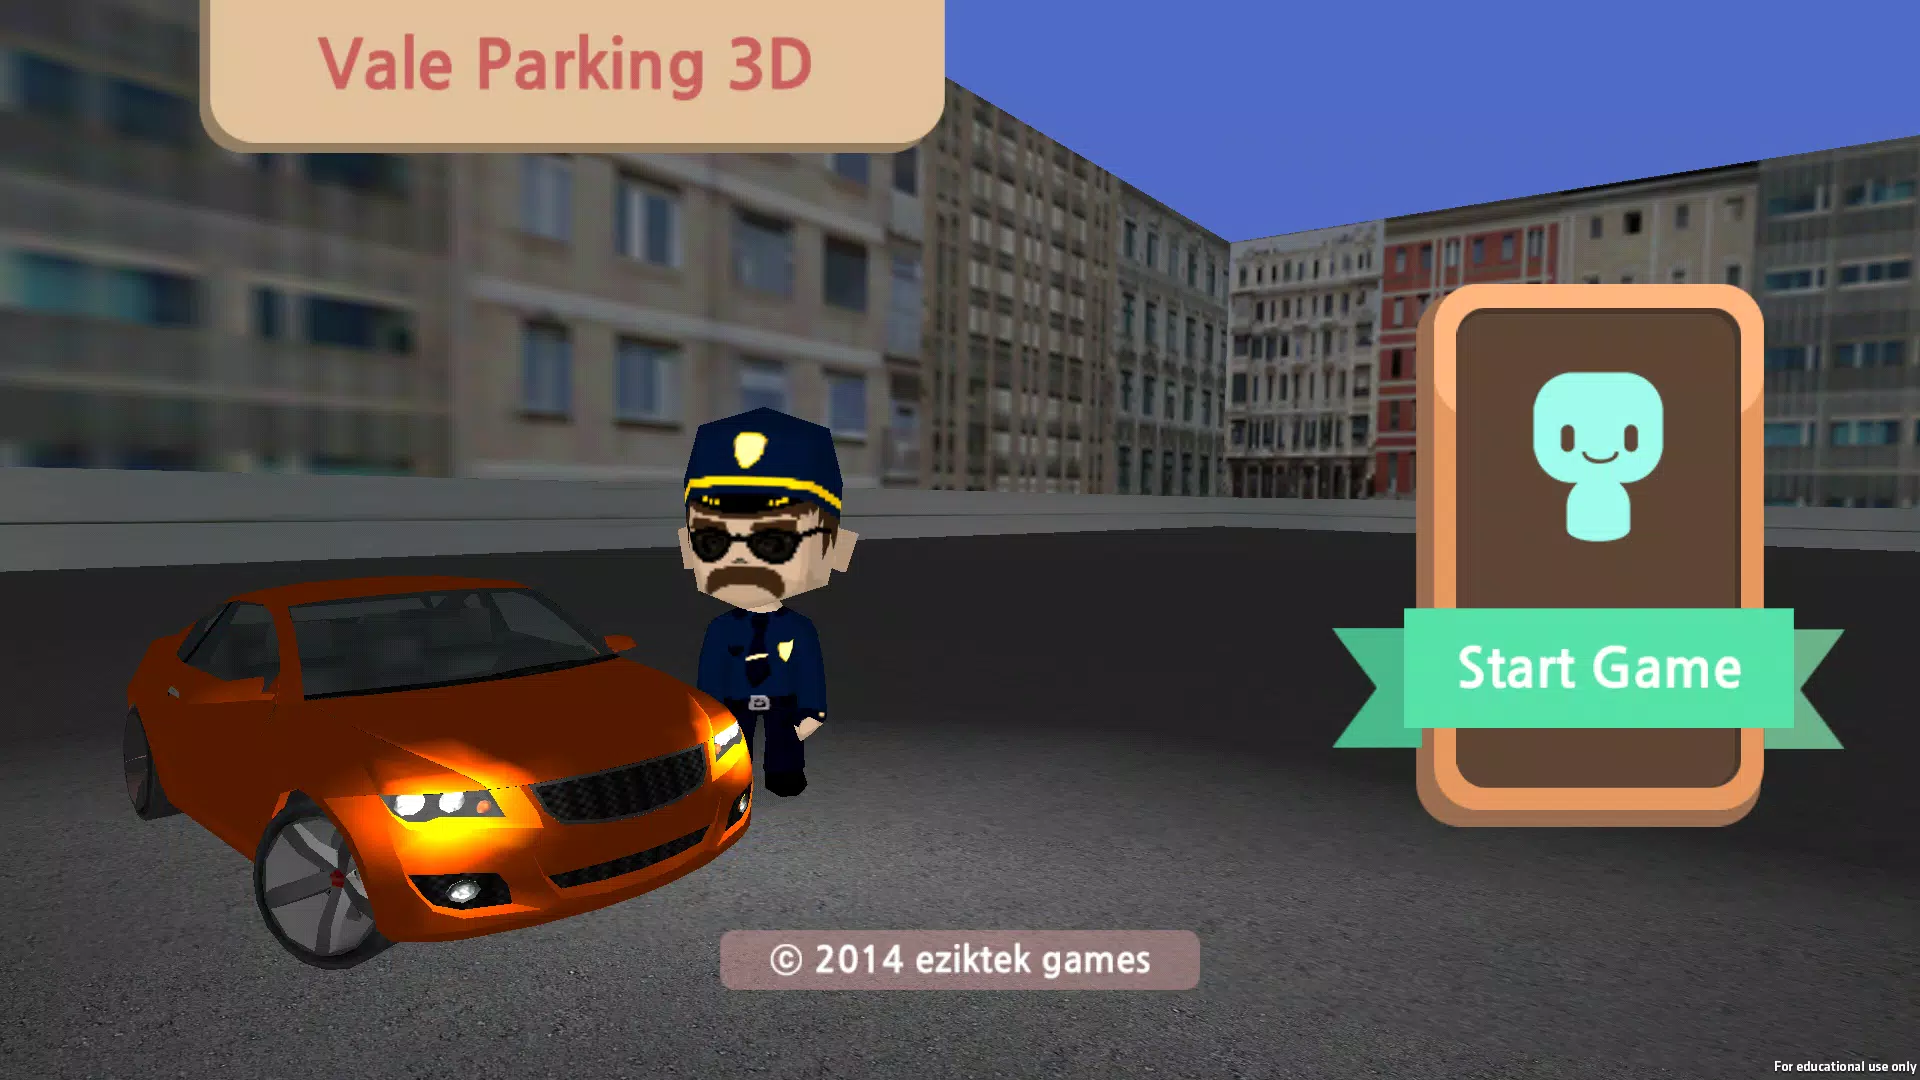 VALET PARKING 3D jogo online no